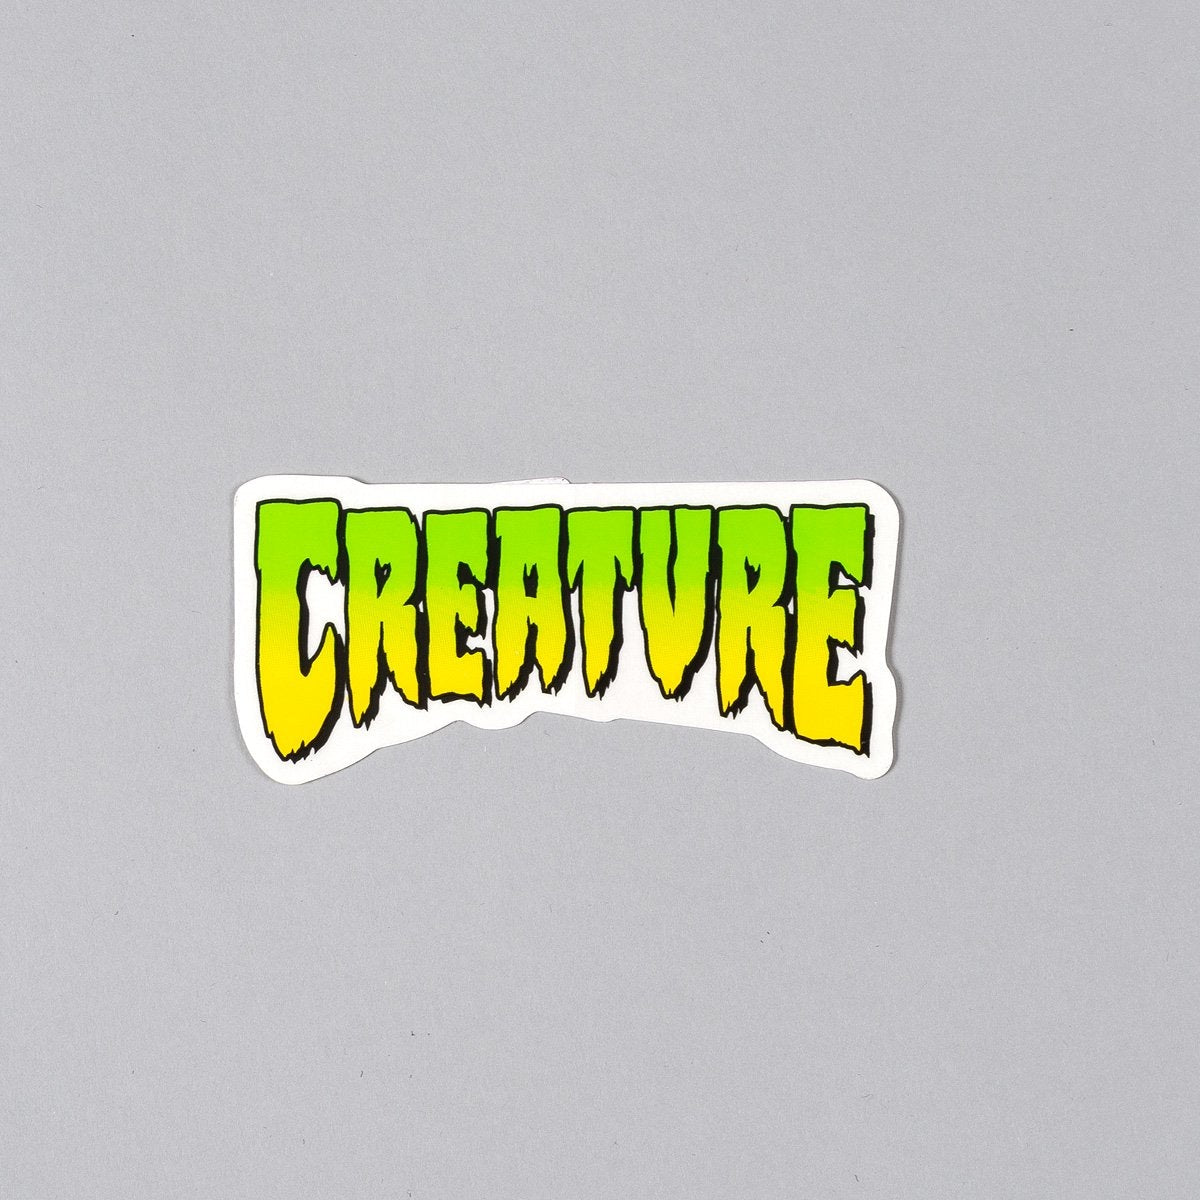 Creature Logo Sticker Green 100mm x 45mm - Skateboard